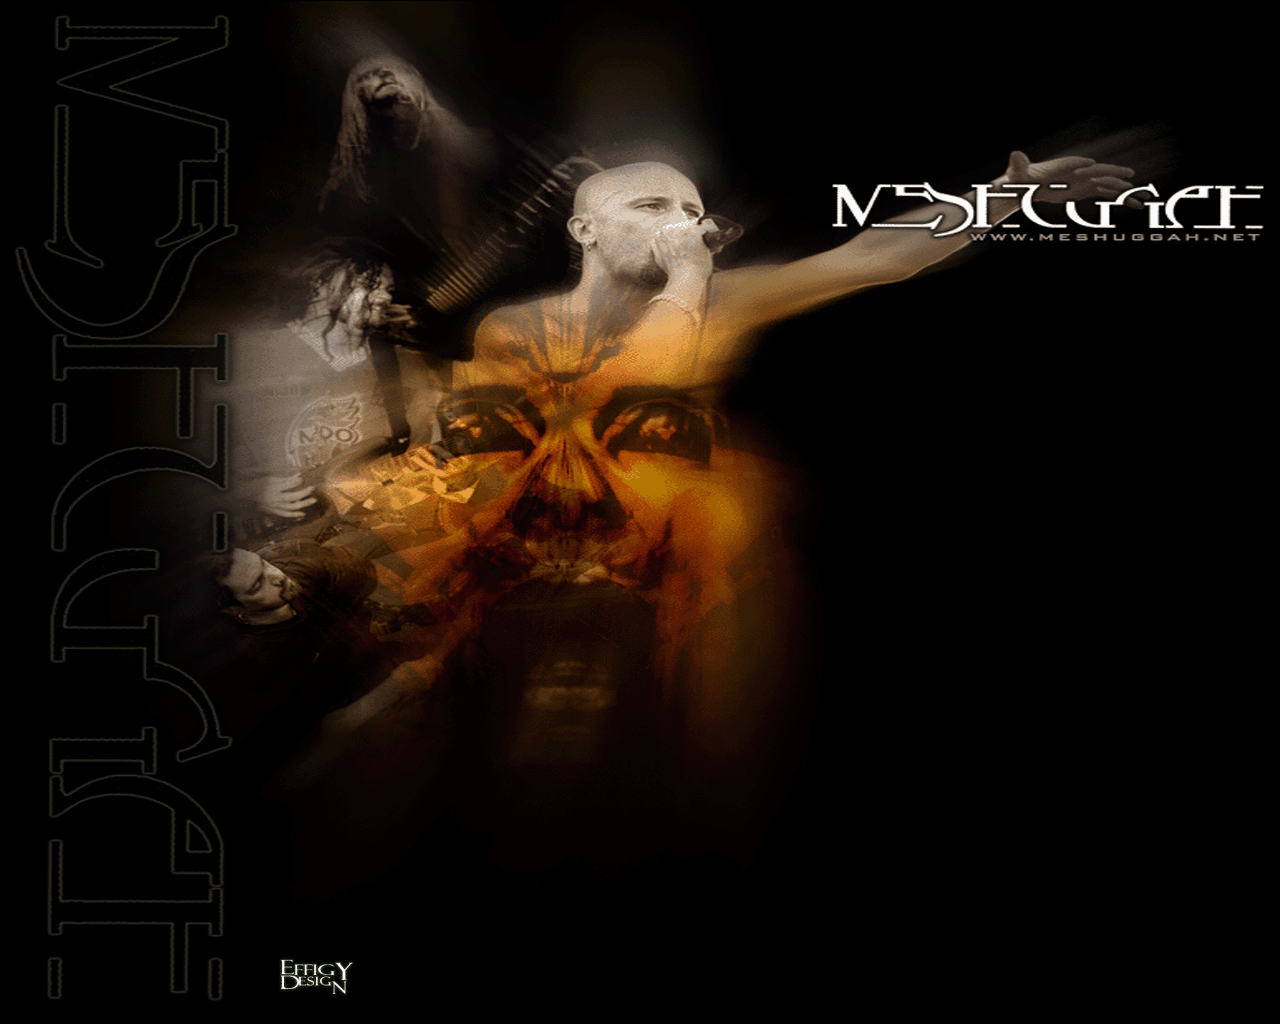 image For > Meshuggah Nothing Wallpaper